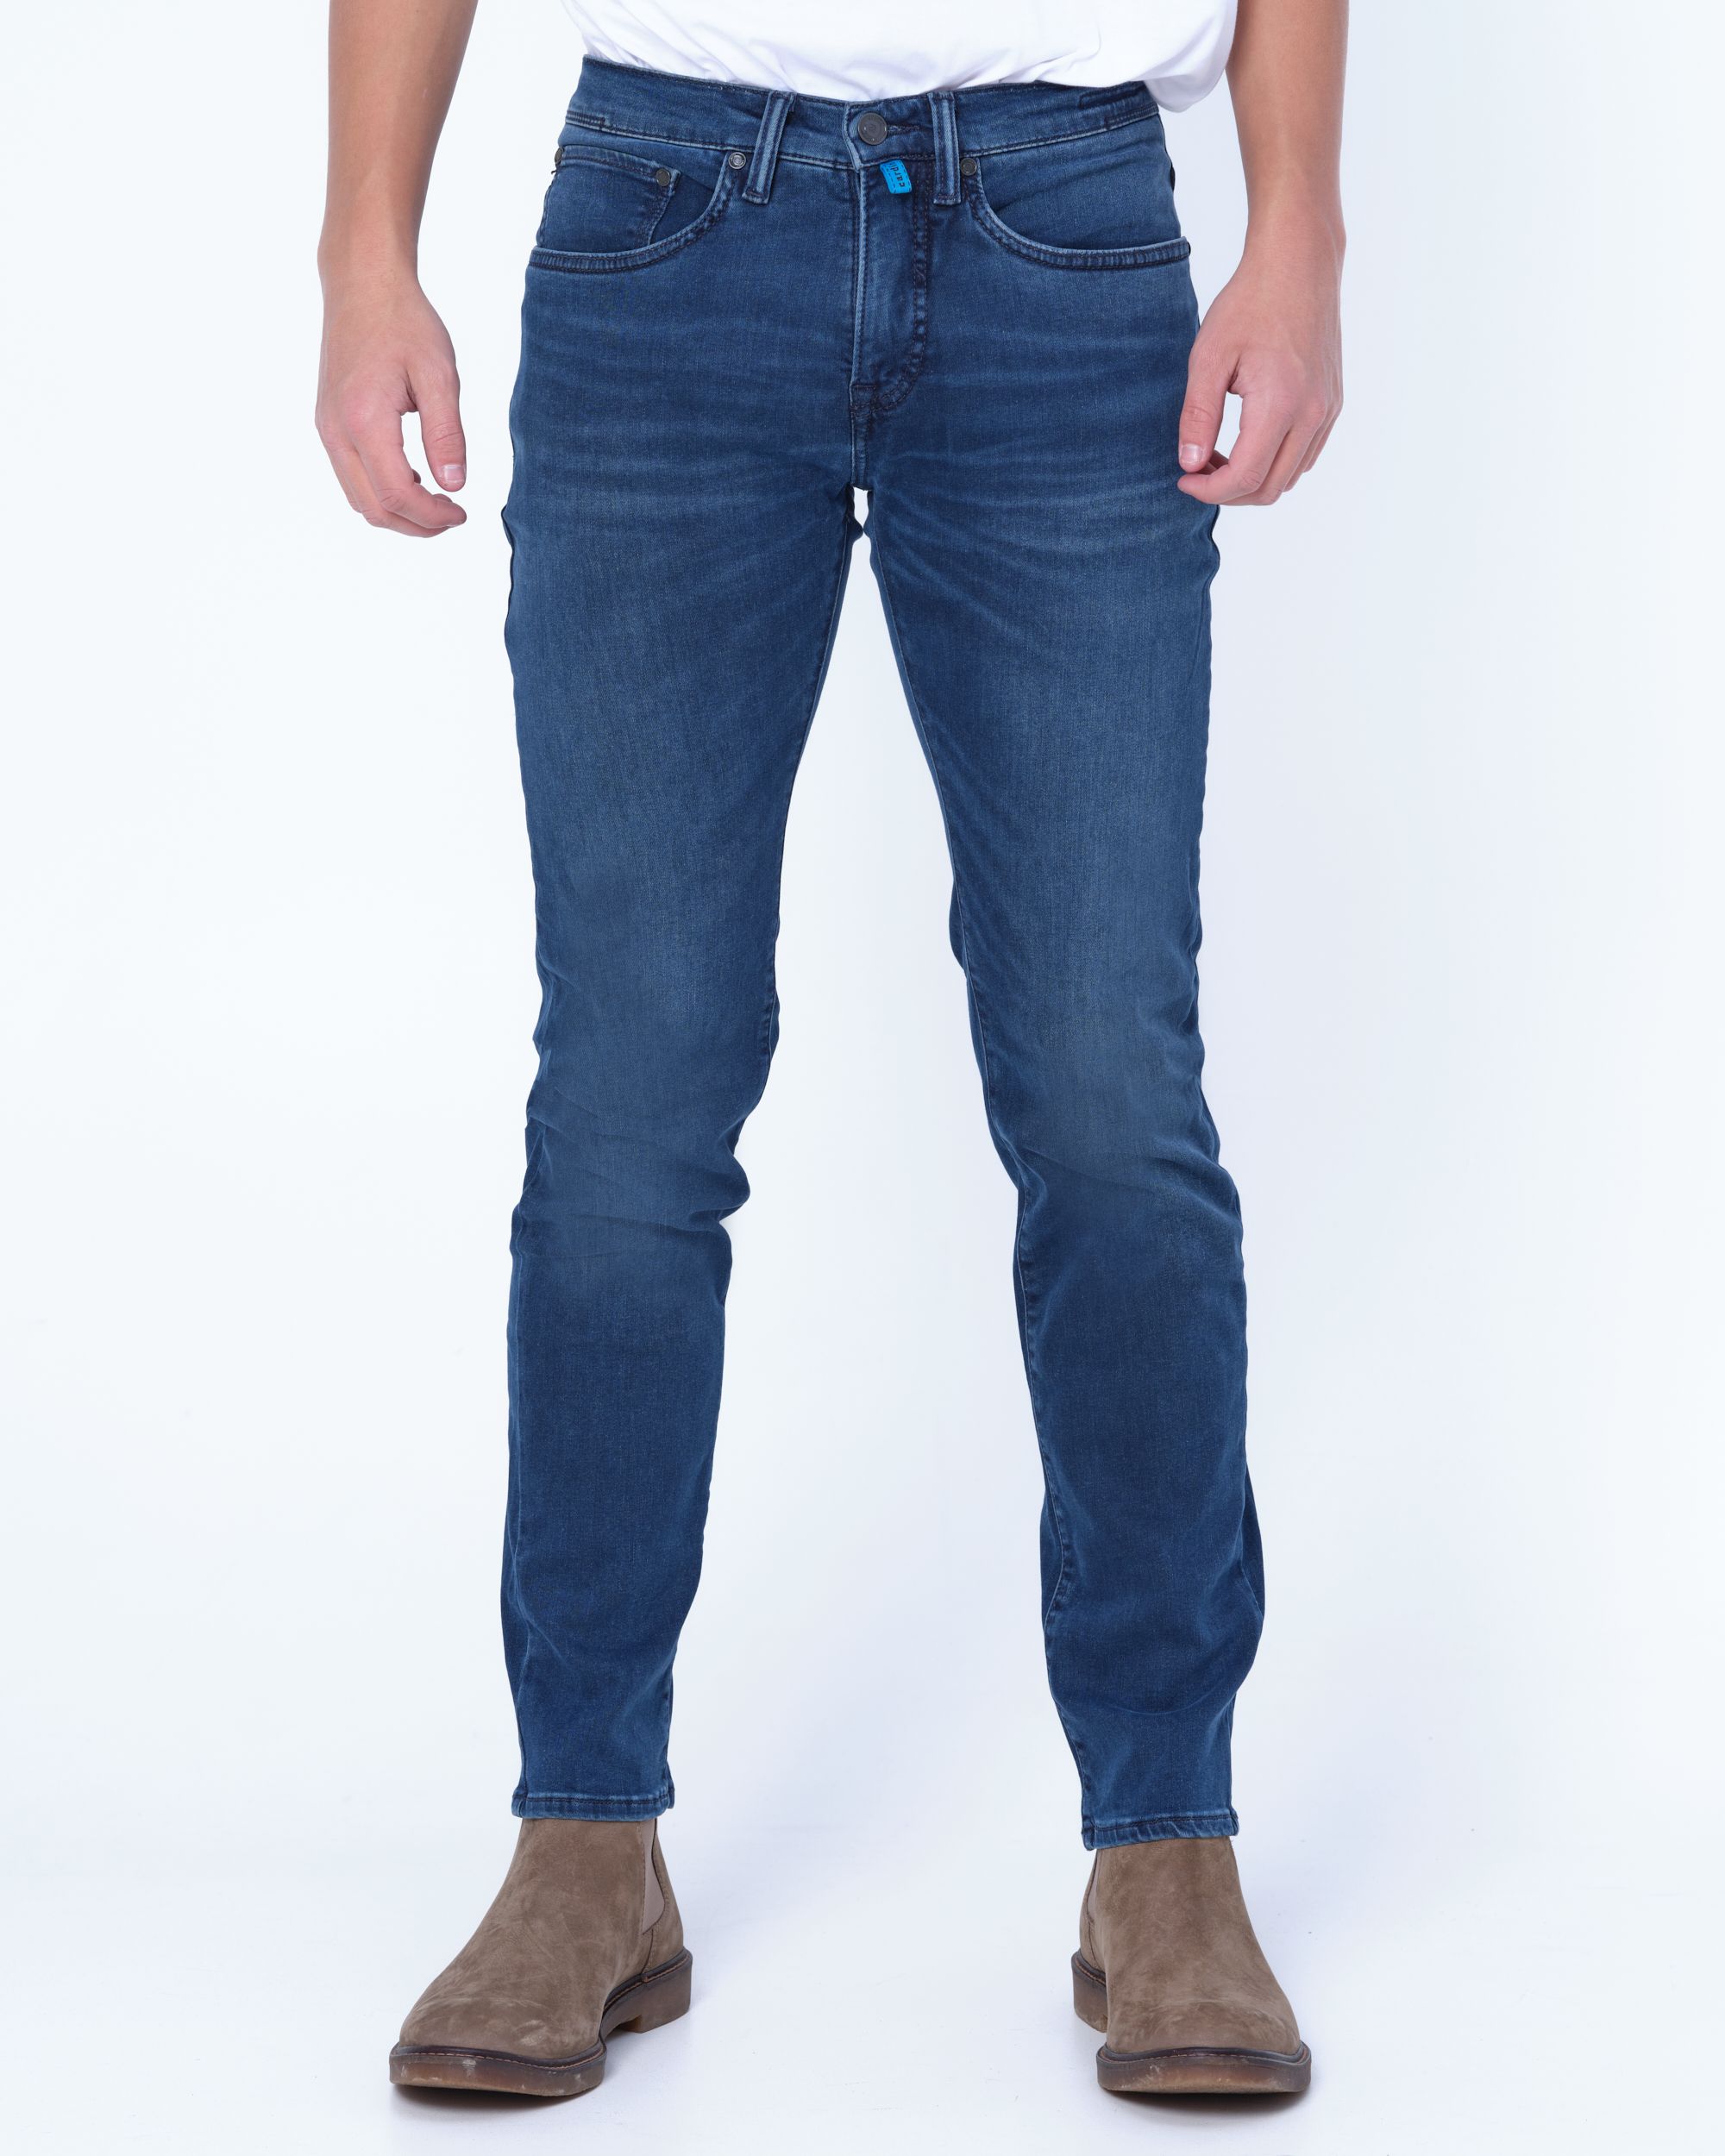 Pierre Cardin Antibes Jeans Donker blauw 080417-001-30/30